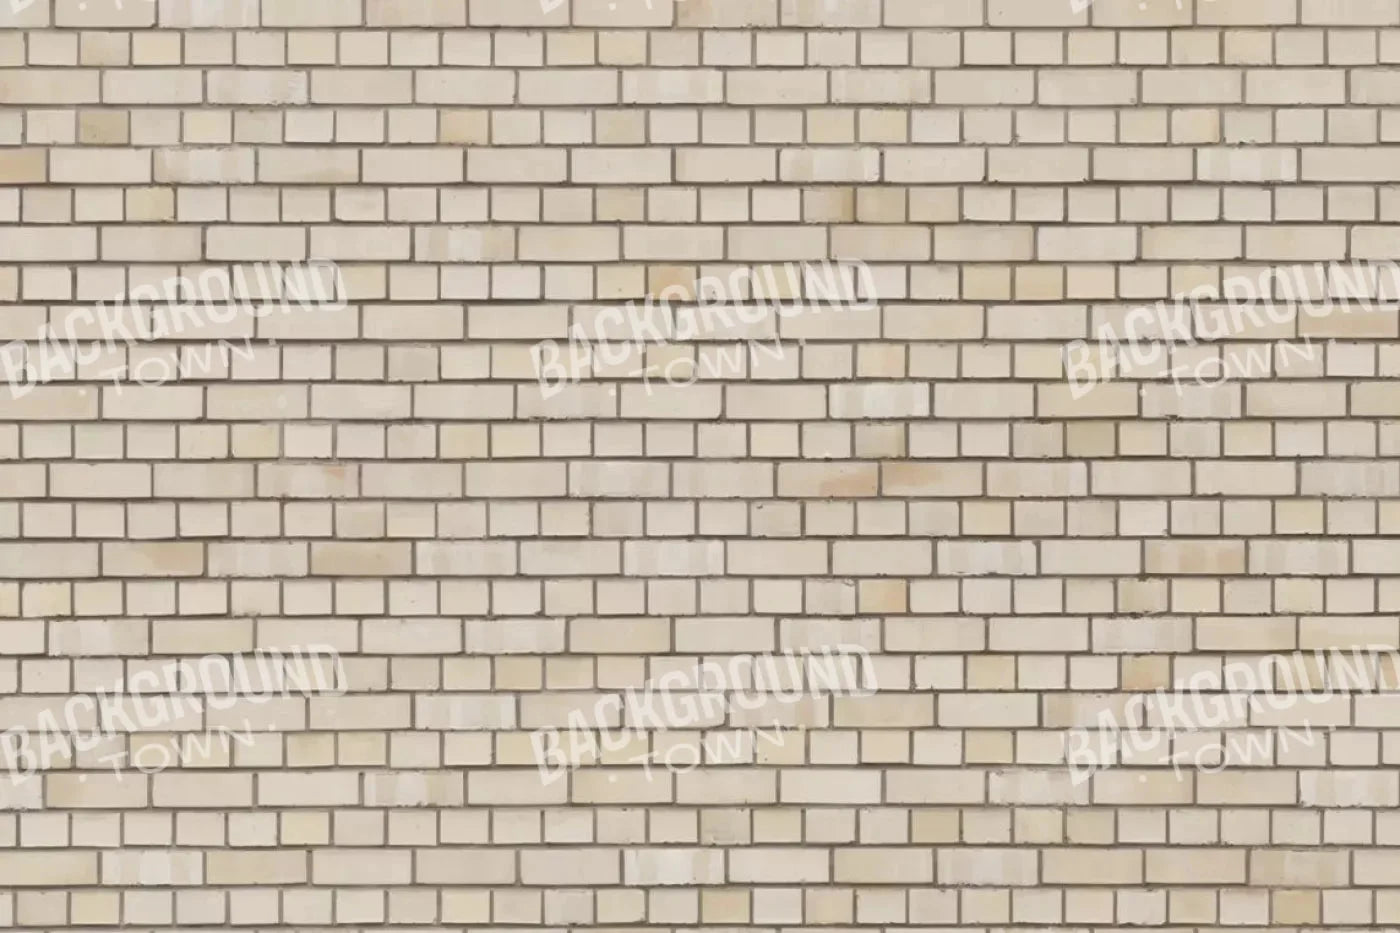 Brickwork Rubbermat Floor 5X4 ( 60 X 48 Inch )